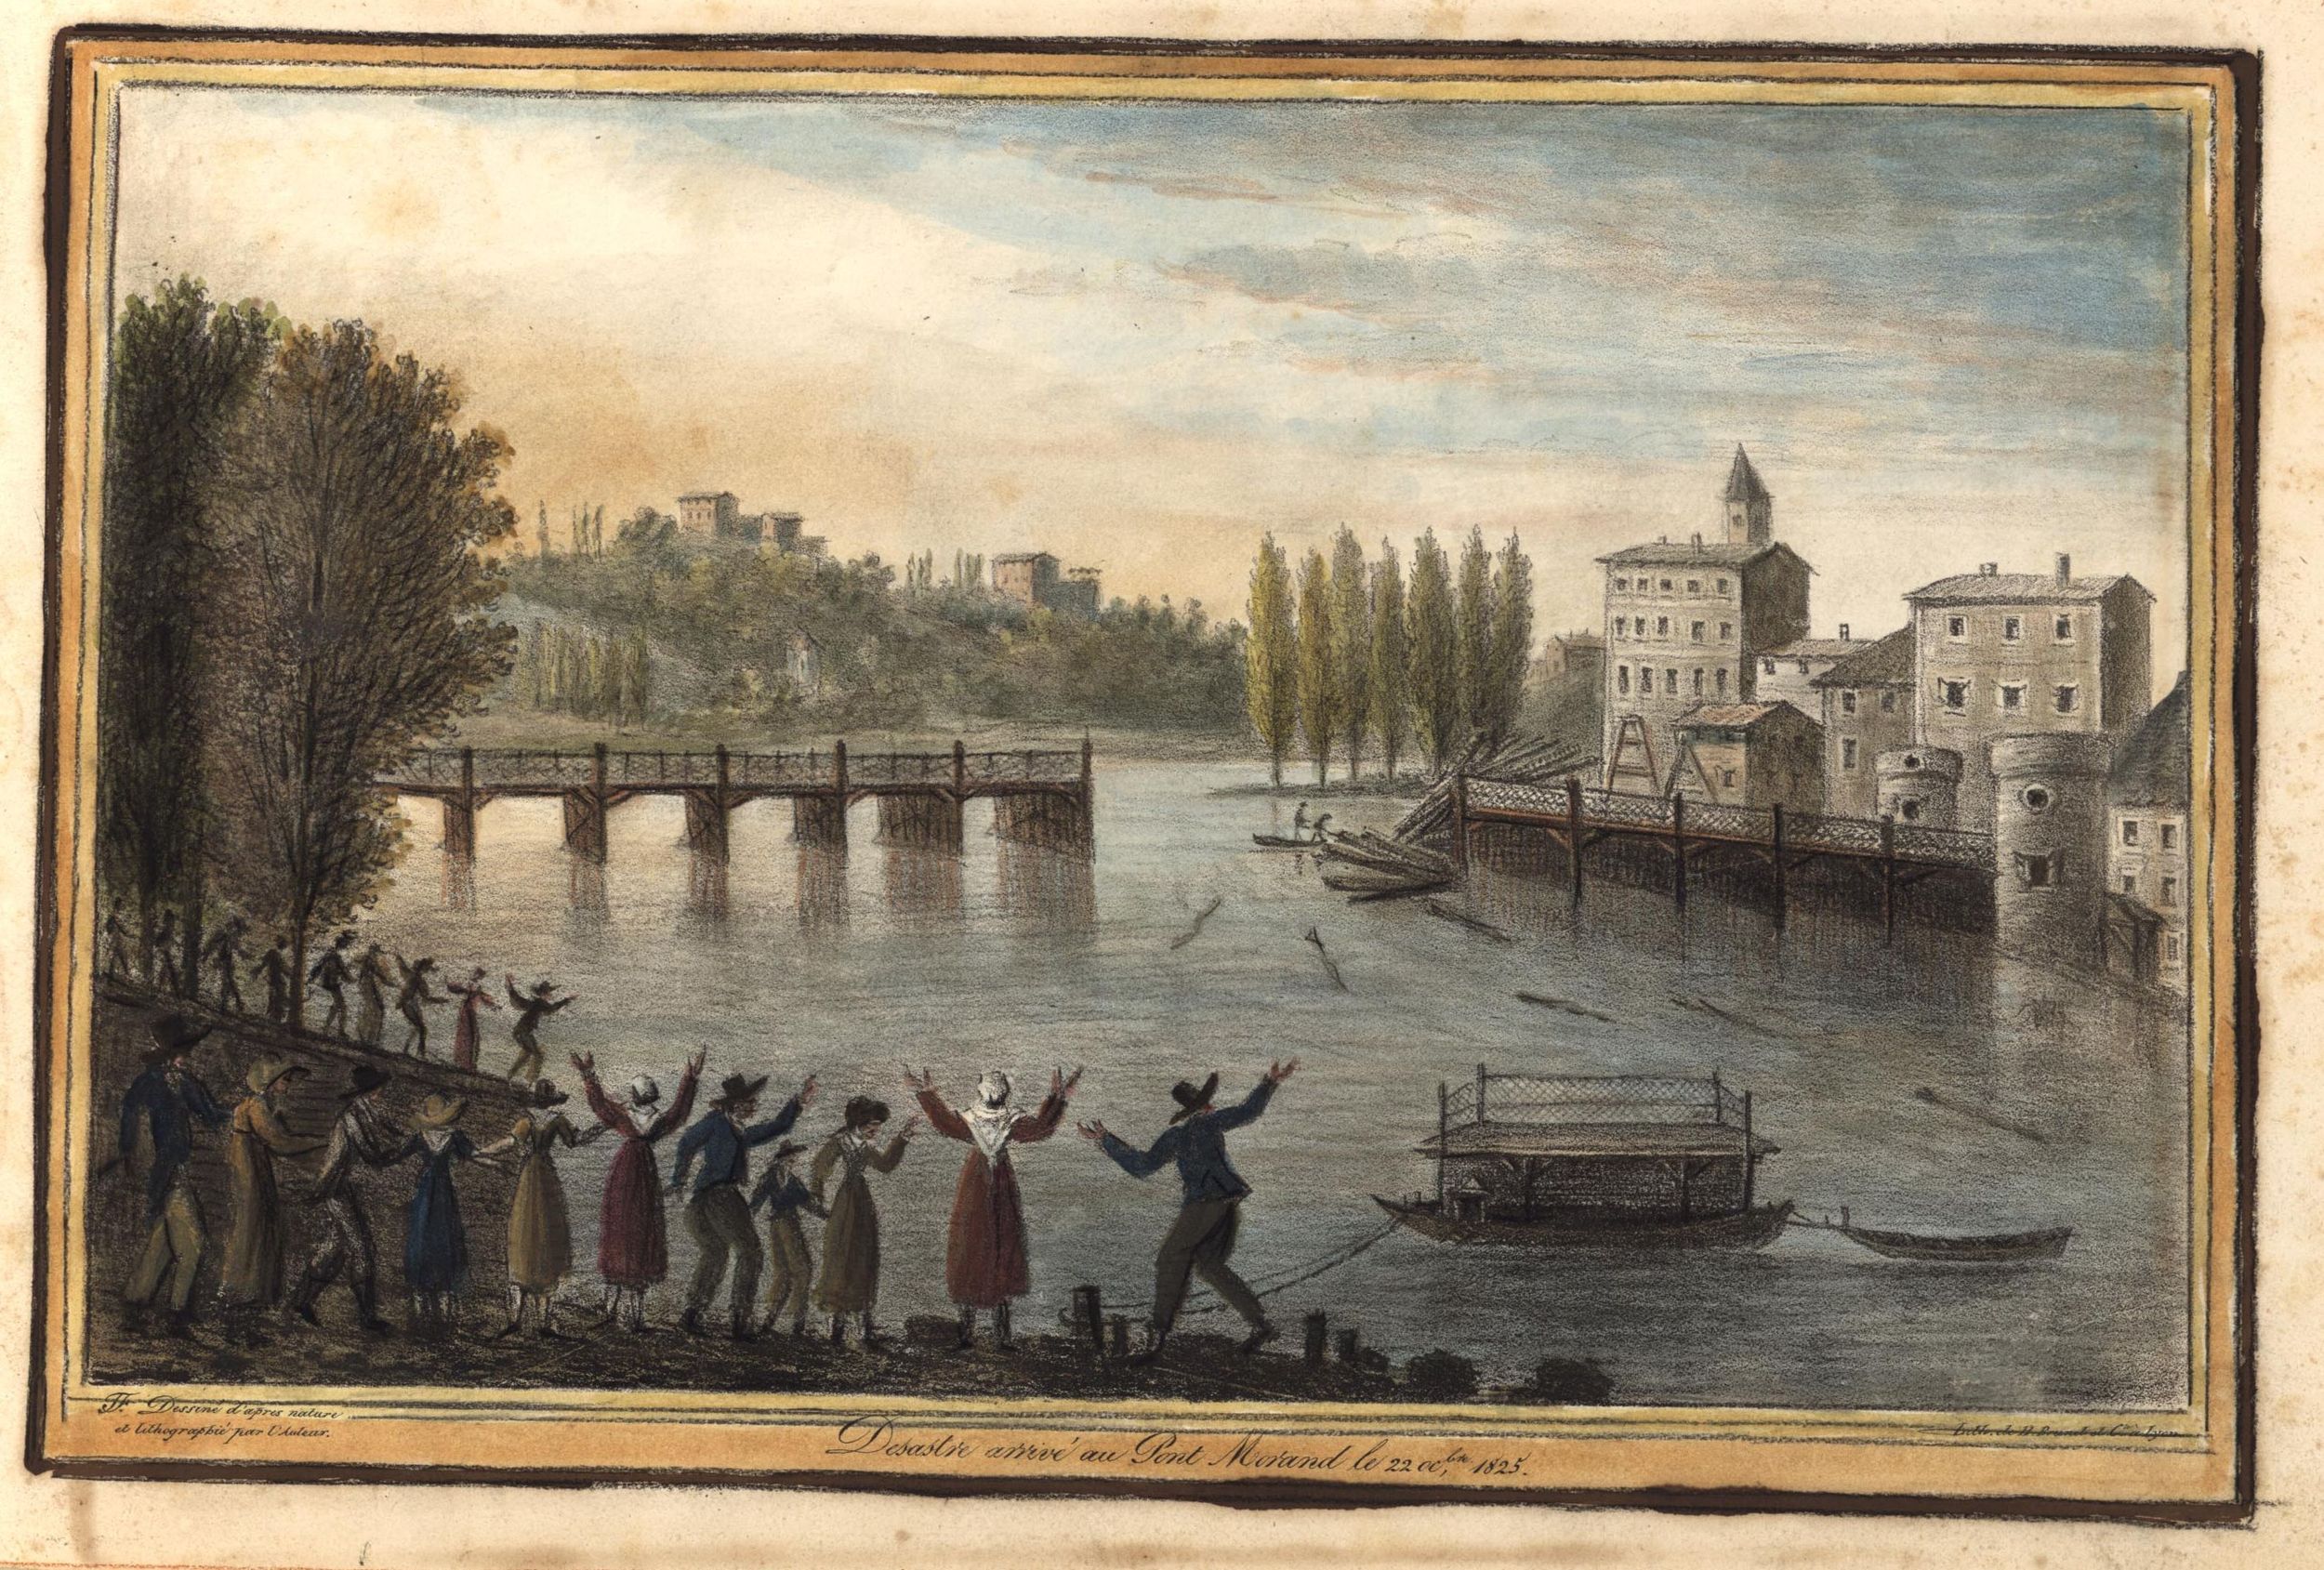 Désastre arrivé au pont Morand le 22 octobre 1825 : aquarelle couleur et craie noire par Joseph Fructus (1825, cote : 17FI/53/27)